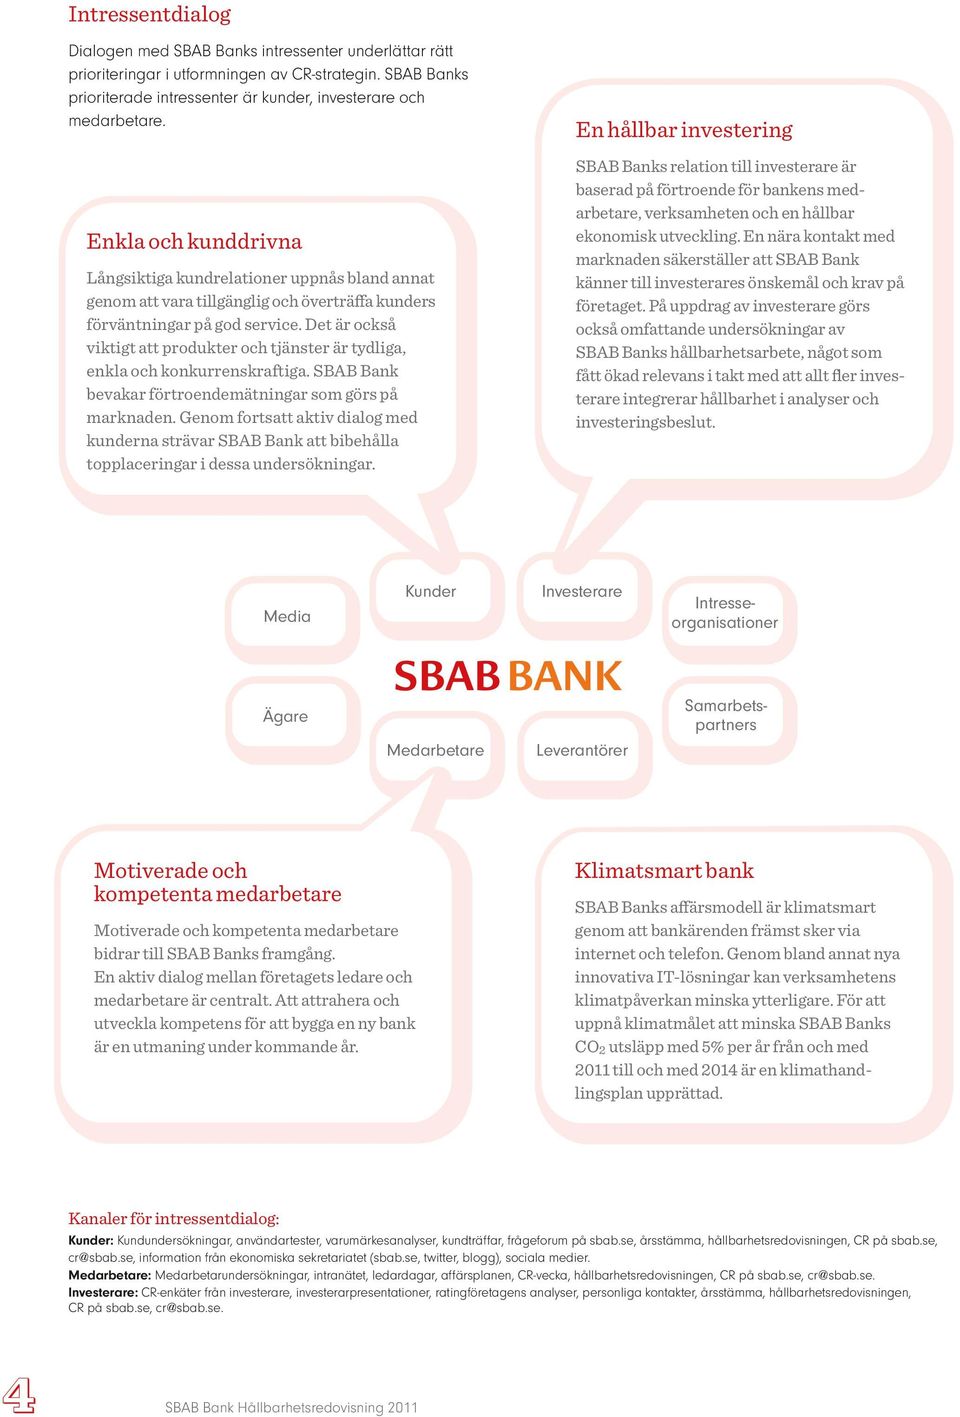 Det är också viktigt att produkter och tjänster är tydliga, enkla och konkurrenskraftiga. SBAB Bank bevakar förtroendemätningar som görs på marknaden.